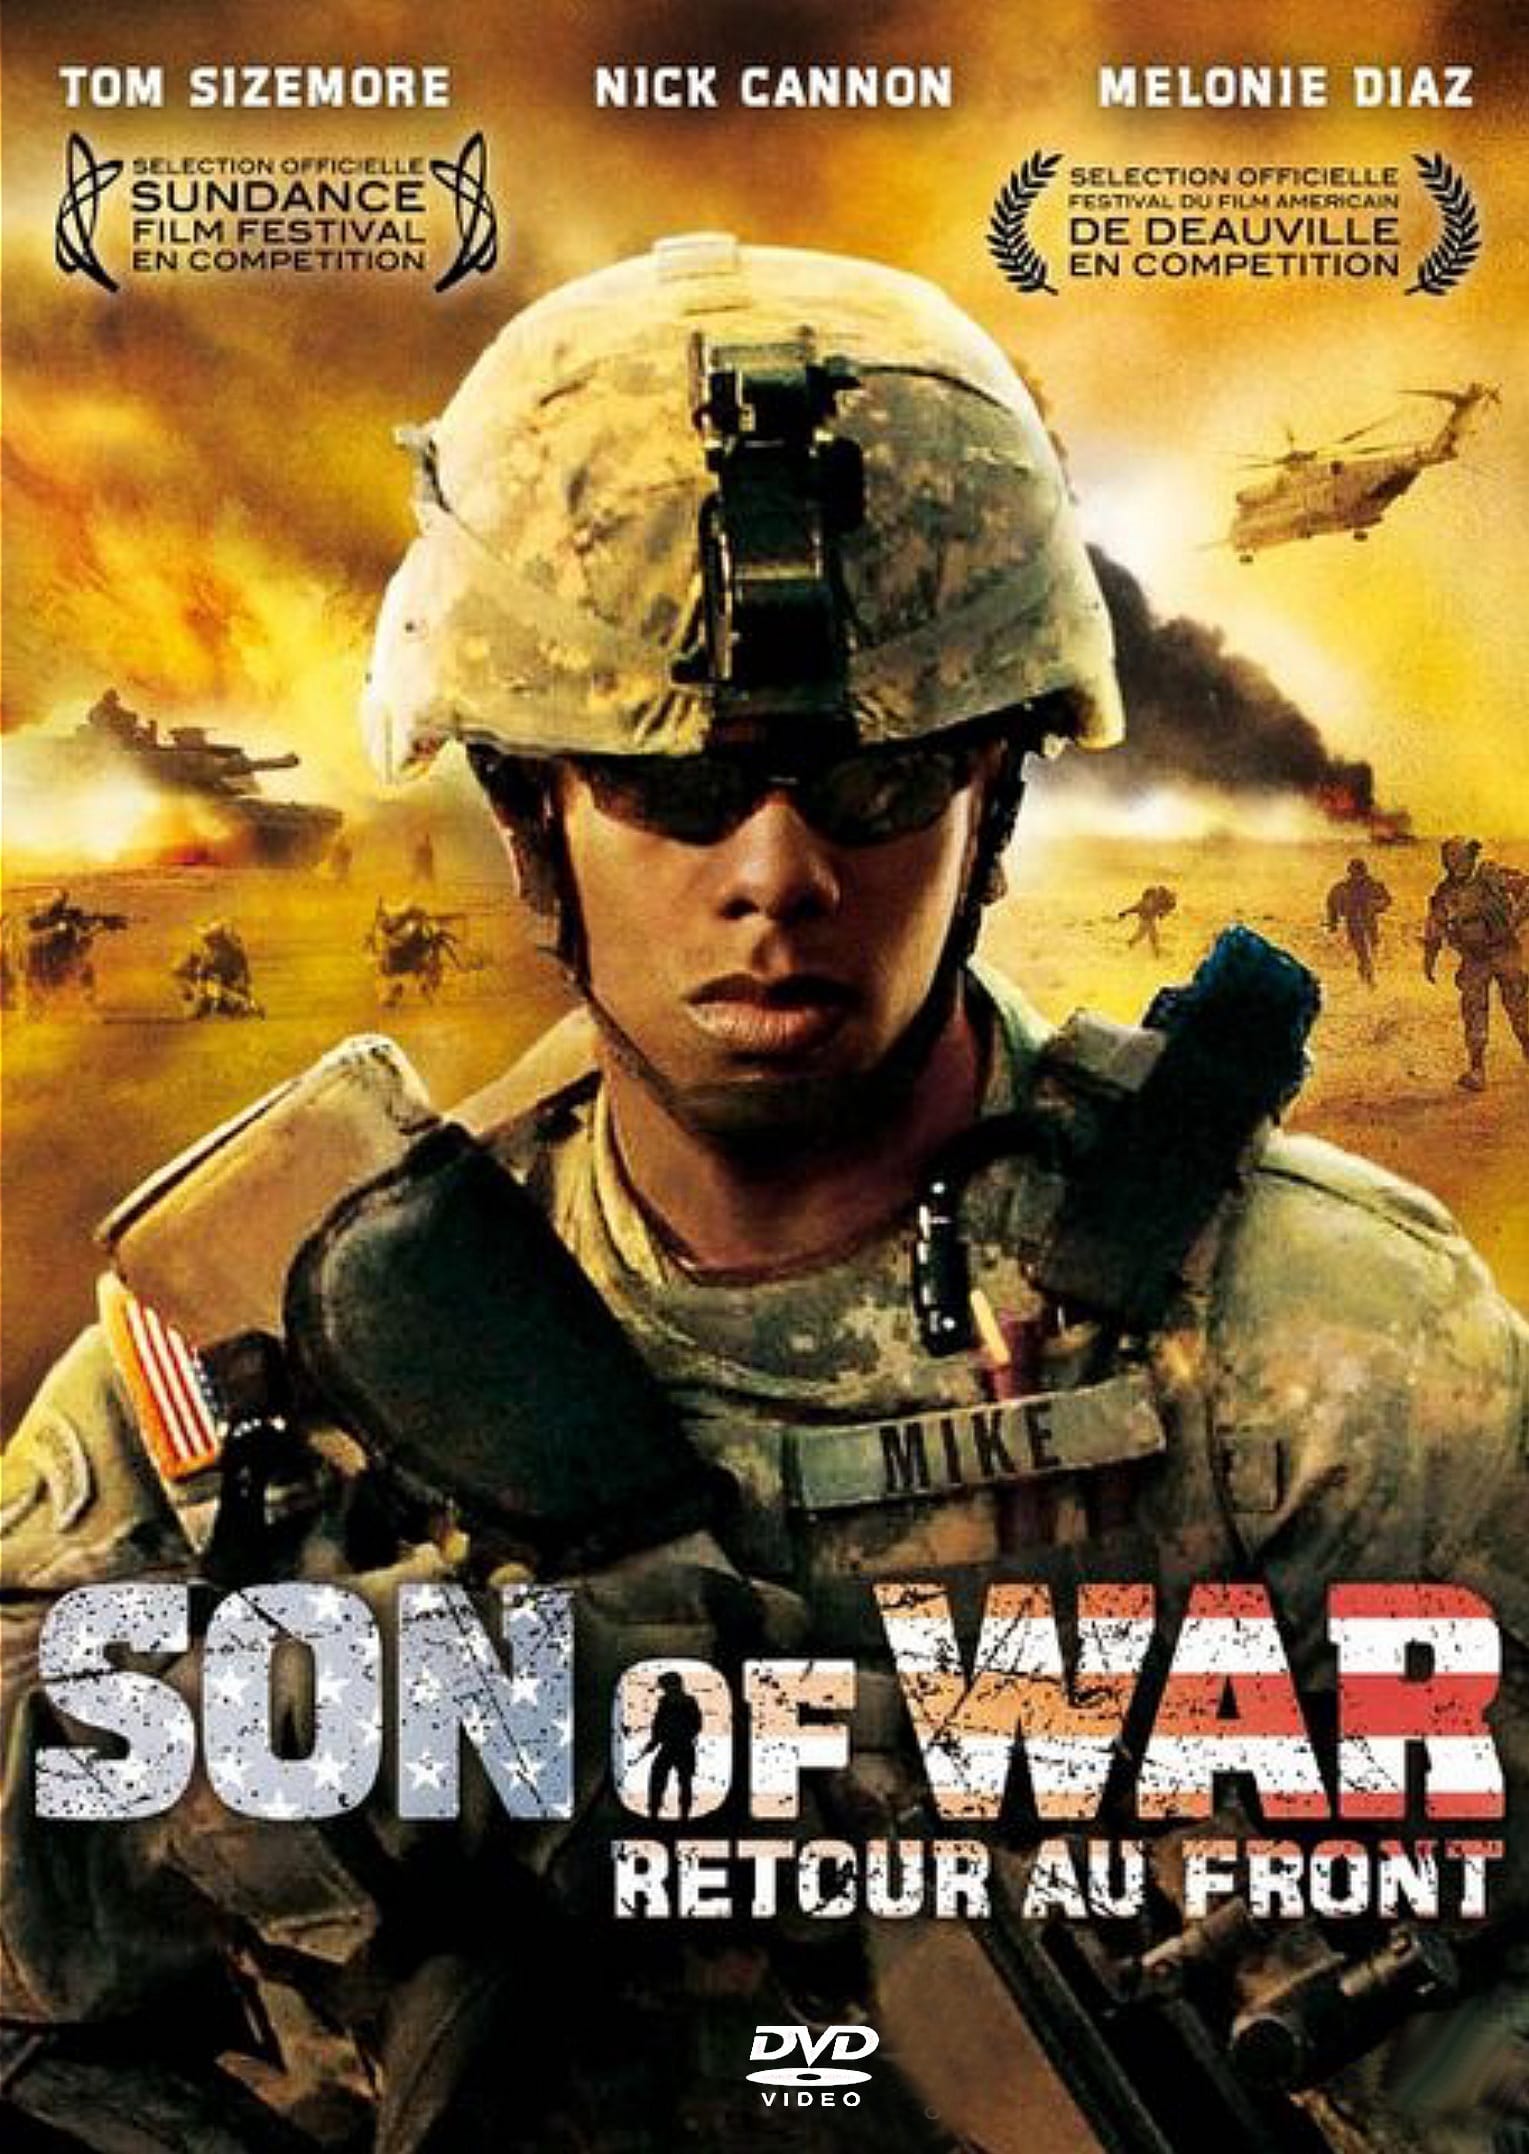 Son of War